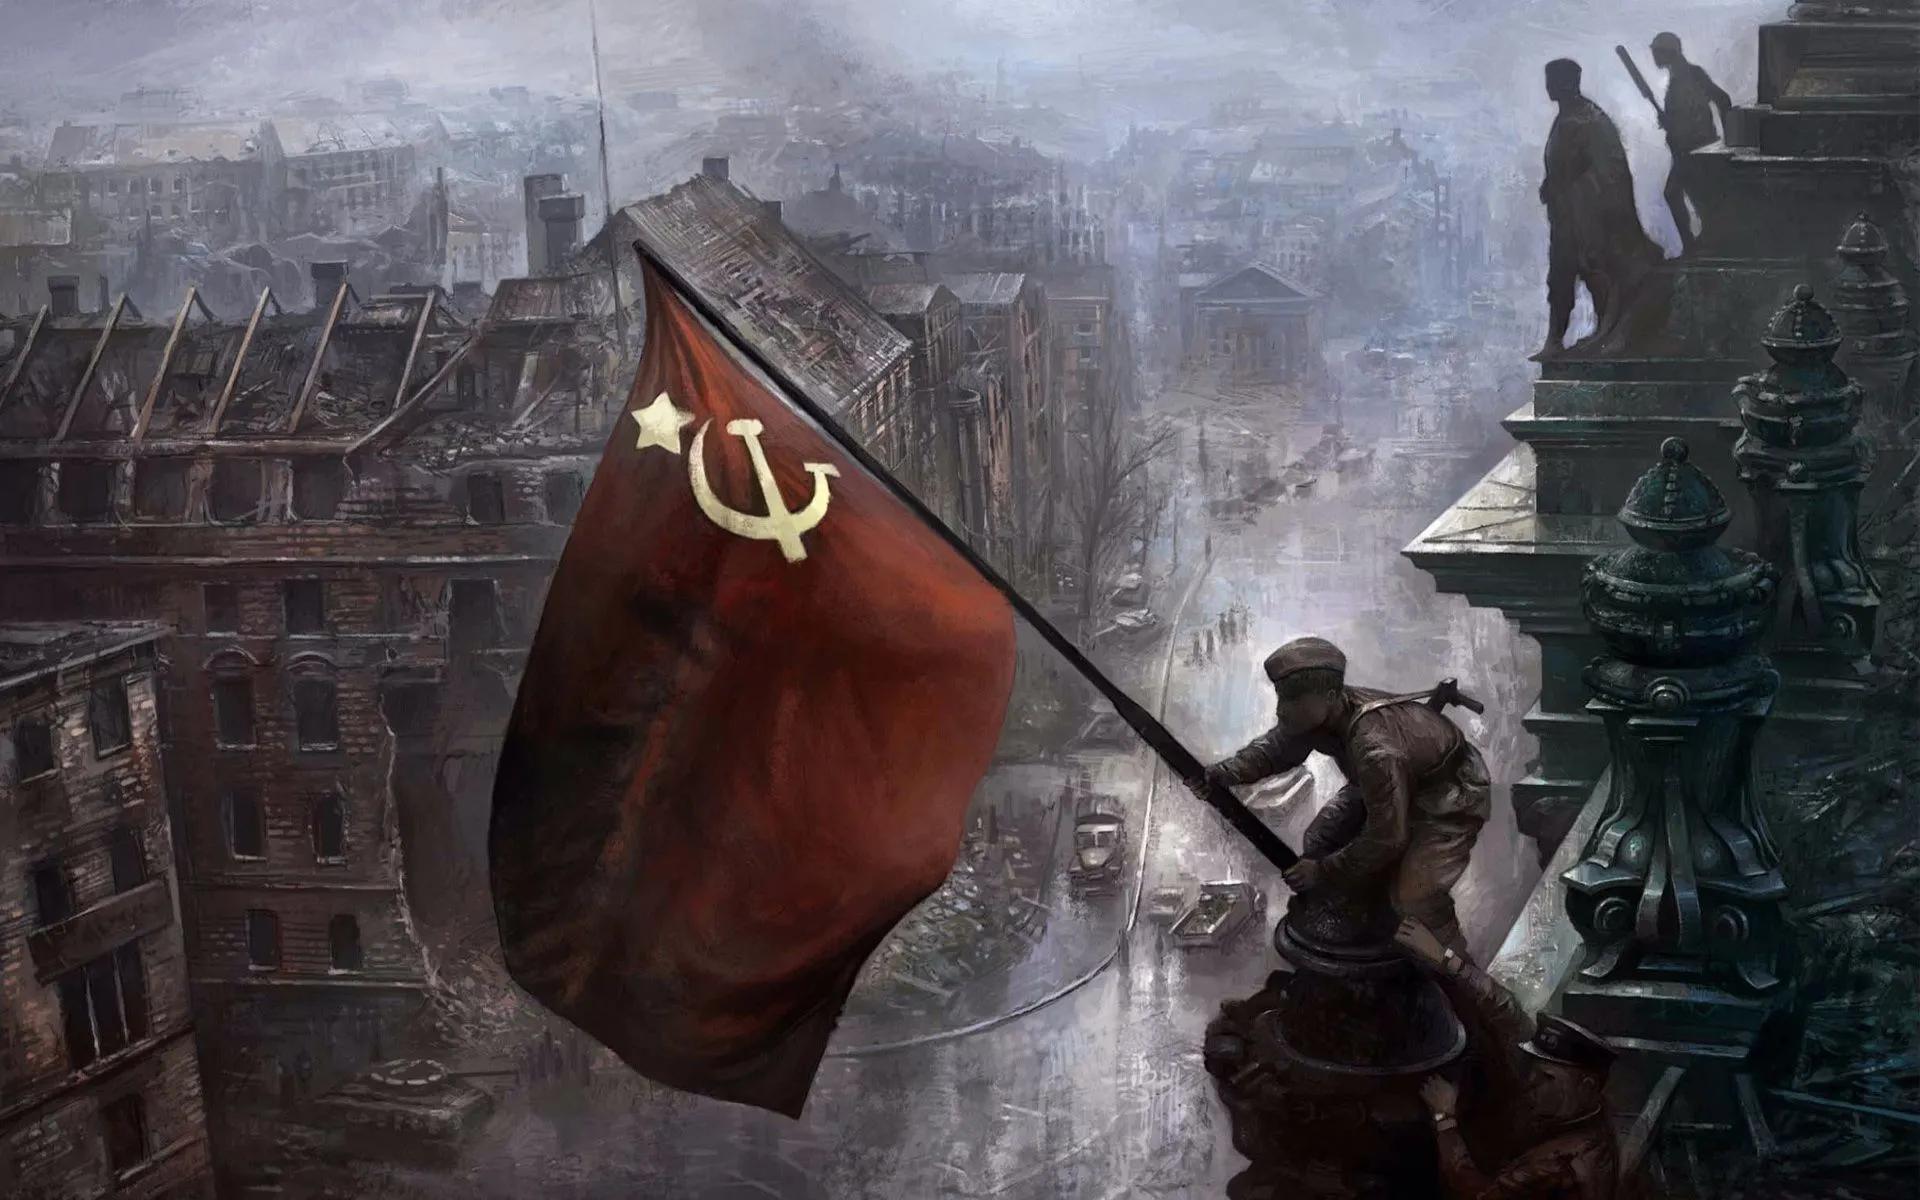 苏联——从砸碎帝国主义锁链的解放者到霸权“红色帝国”